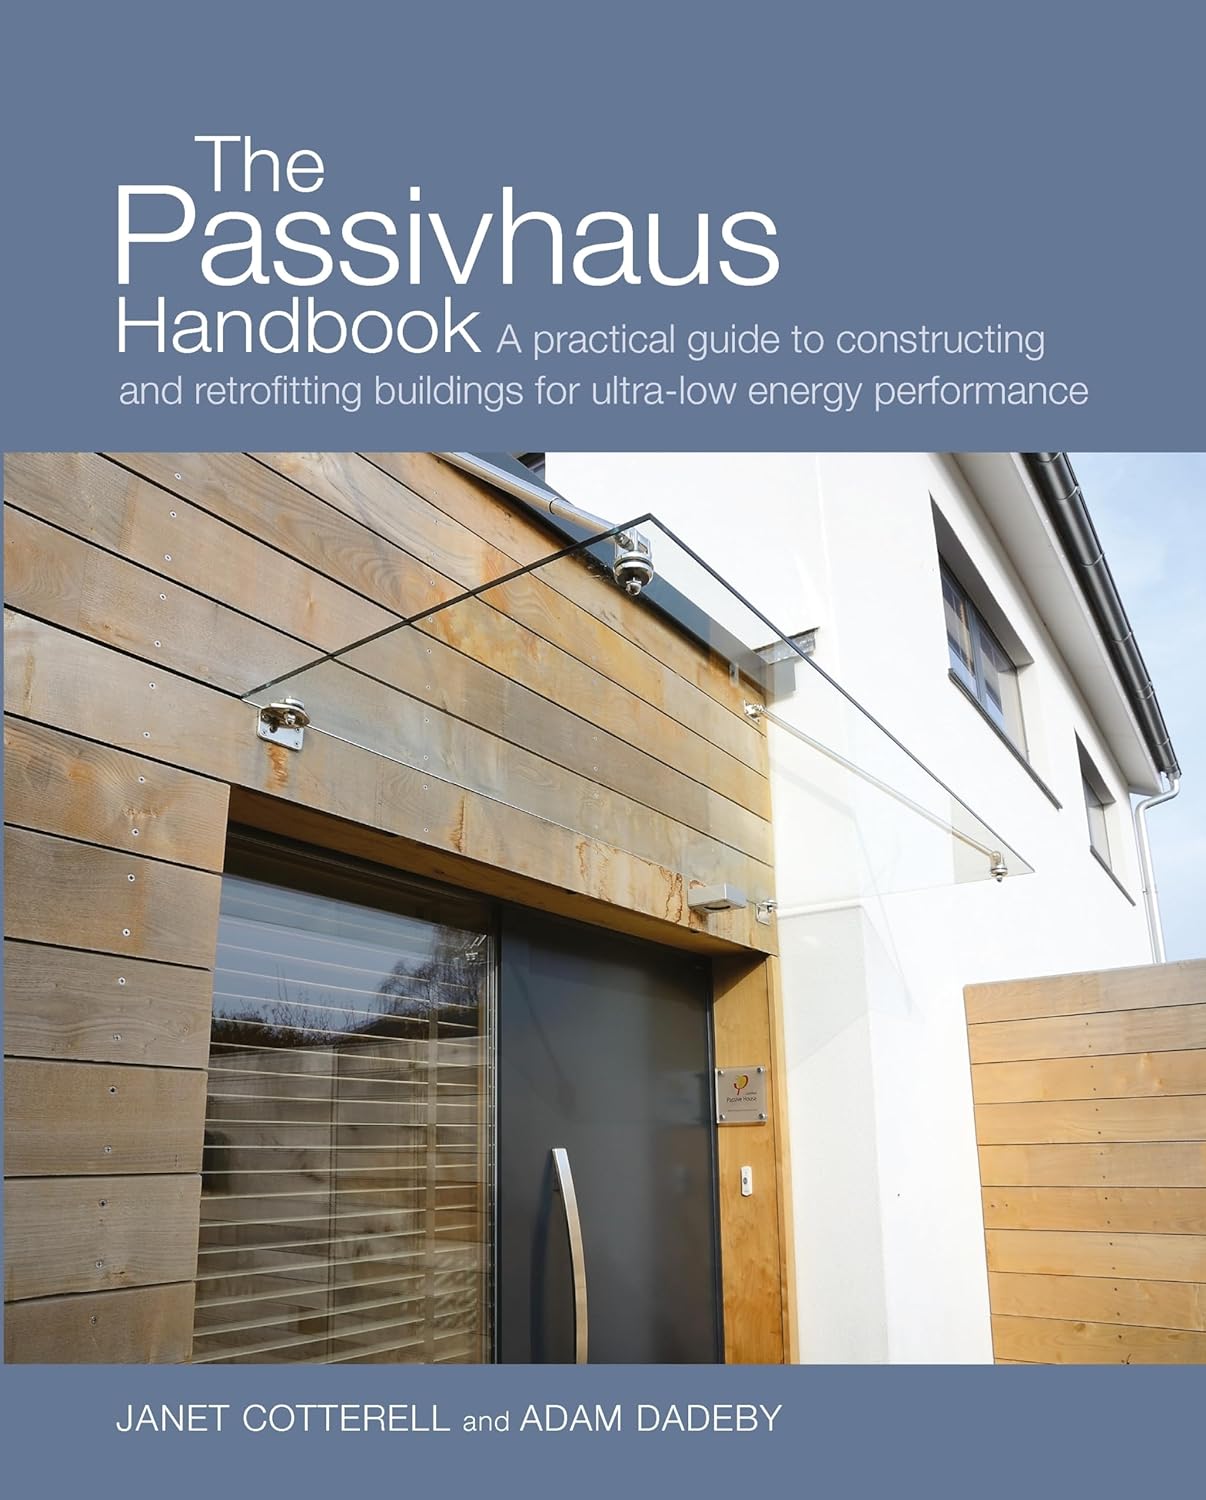 Passivhaus Handbook Review